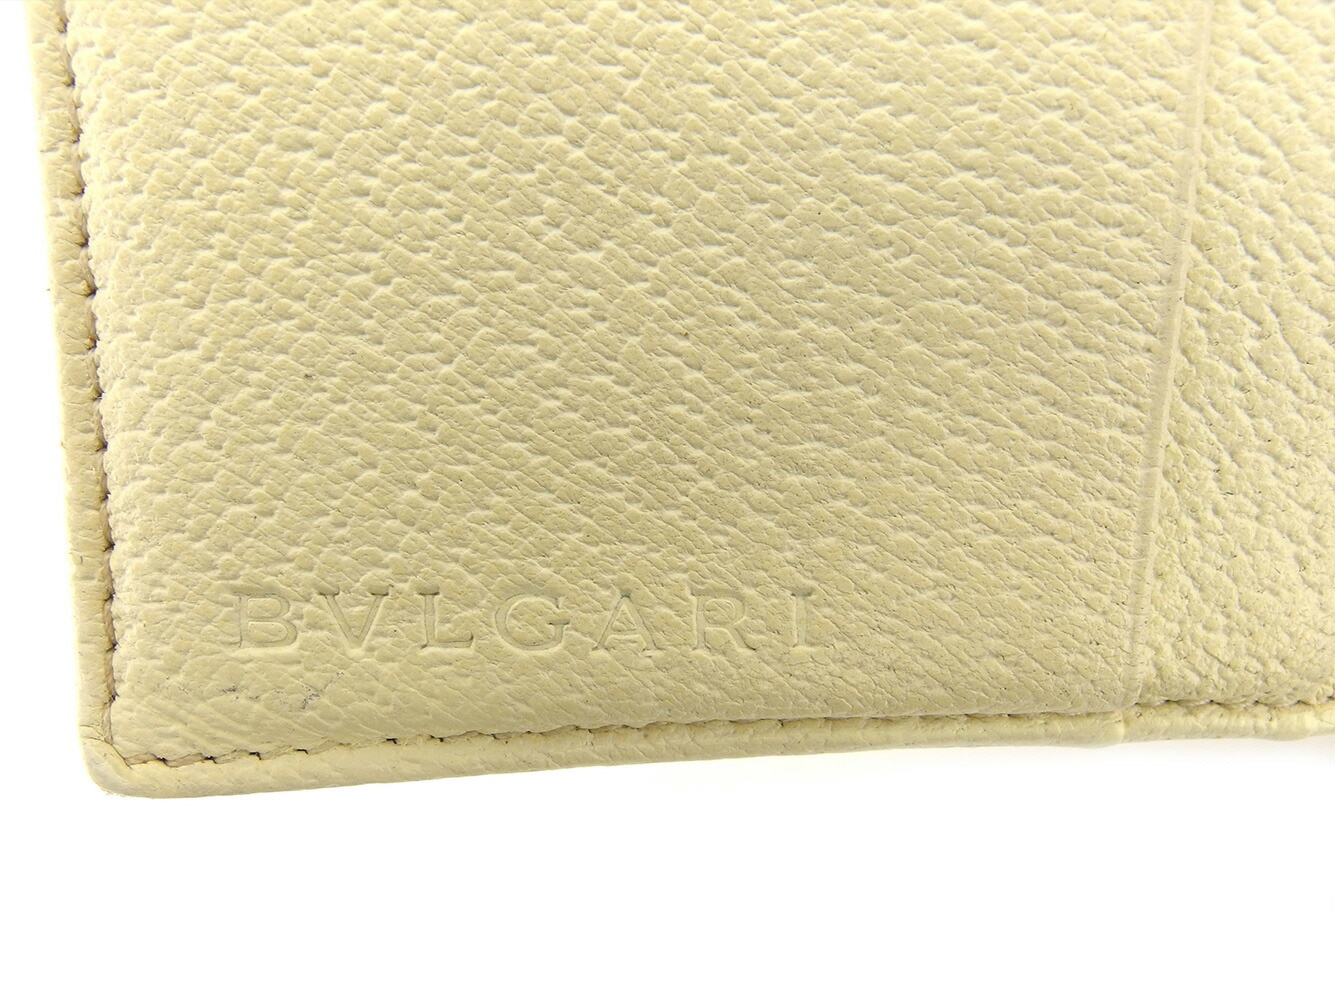 ブルガリ 財布 財布 ロゴマニ... : バッグ・雑貨 : ブルガリ 二つ折り 格安低価